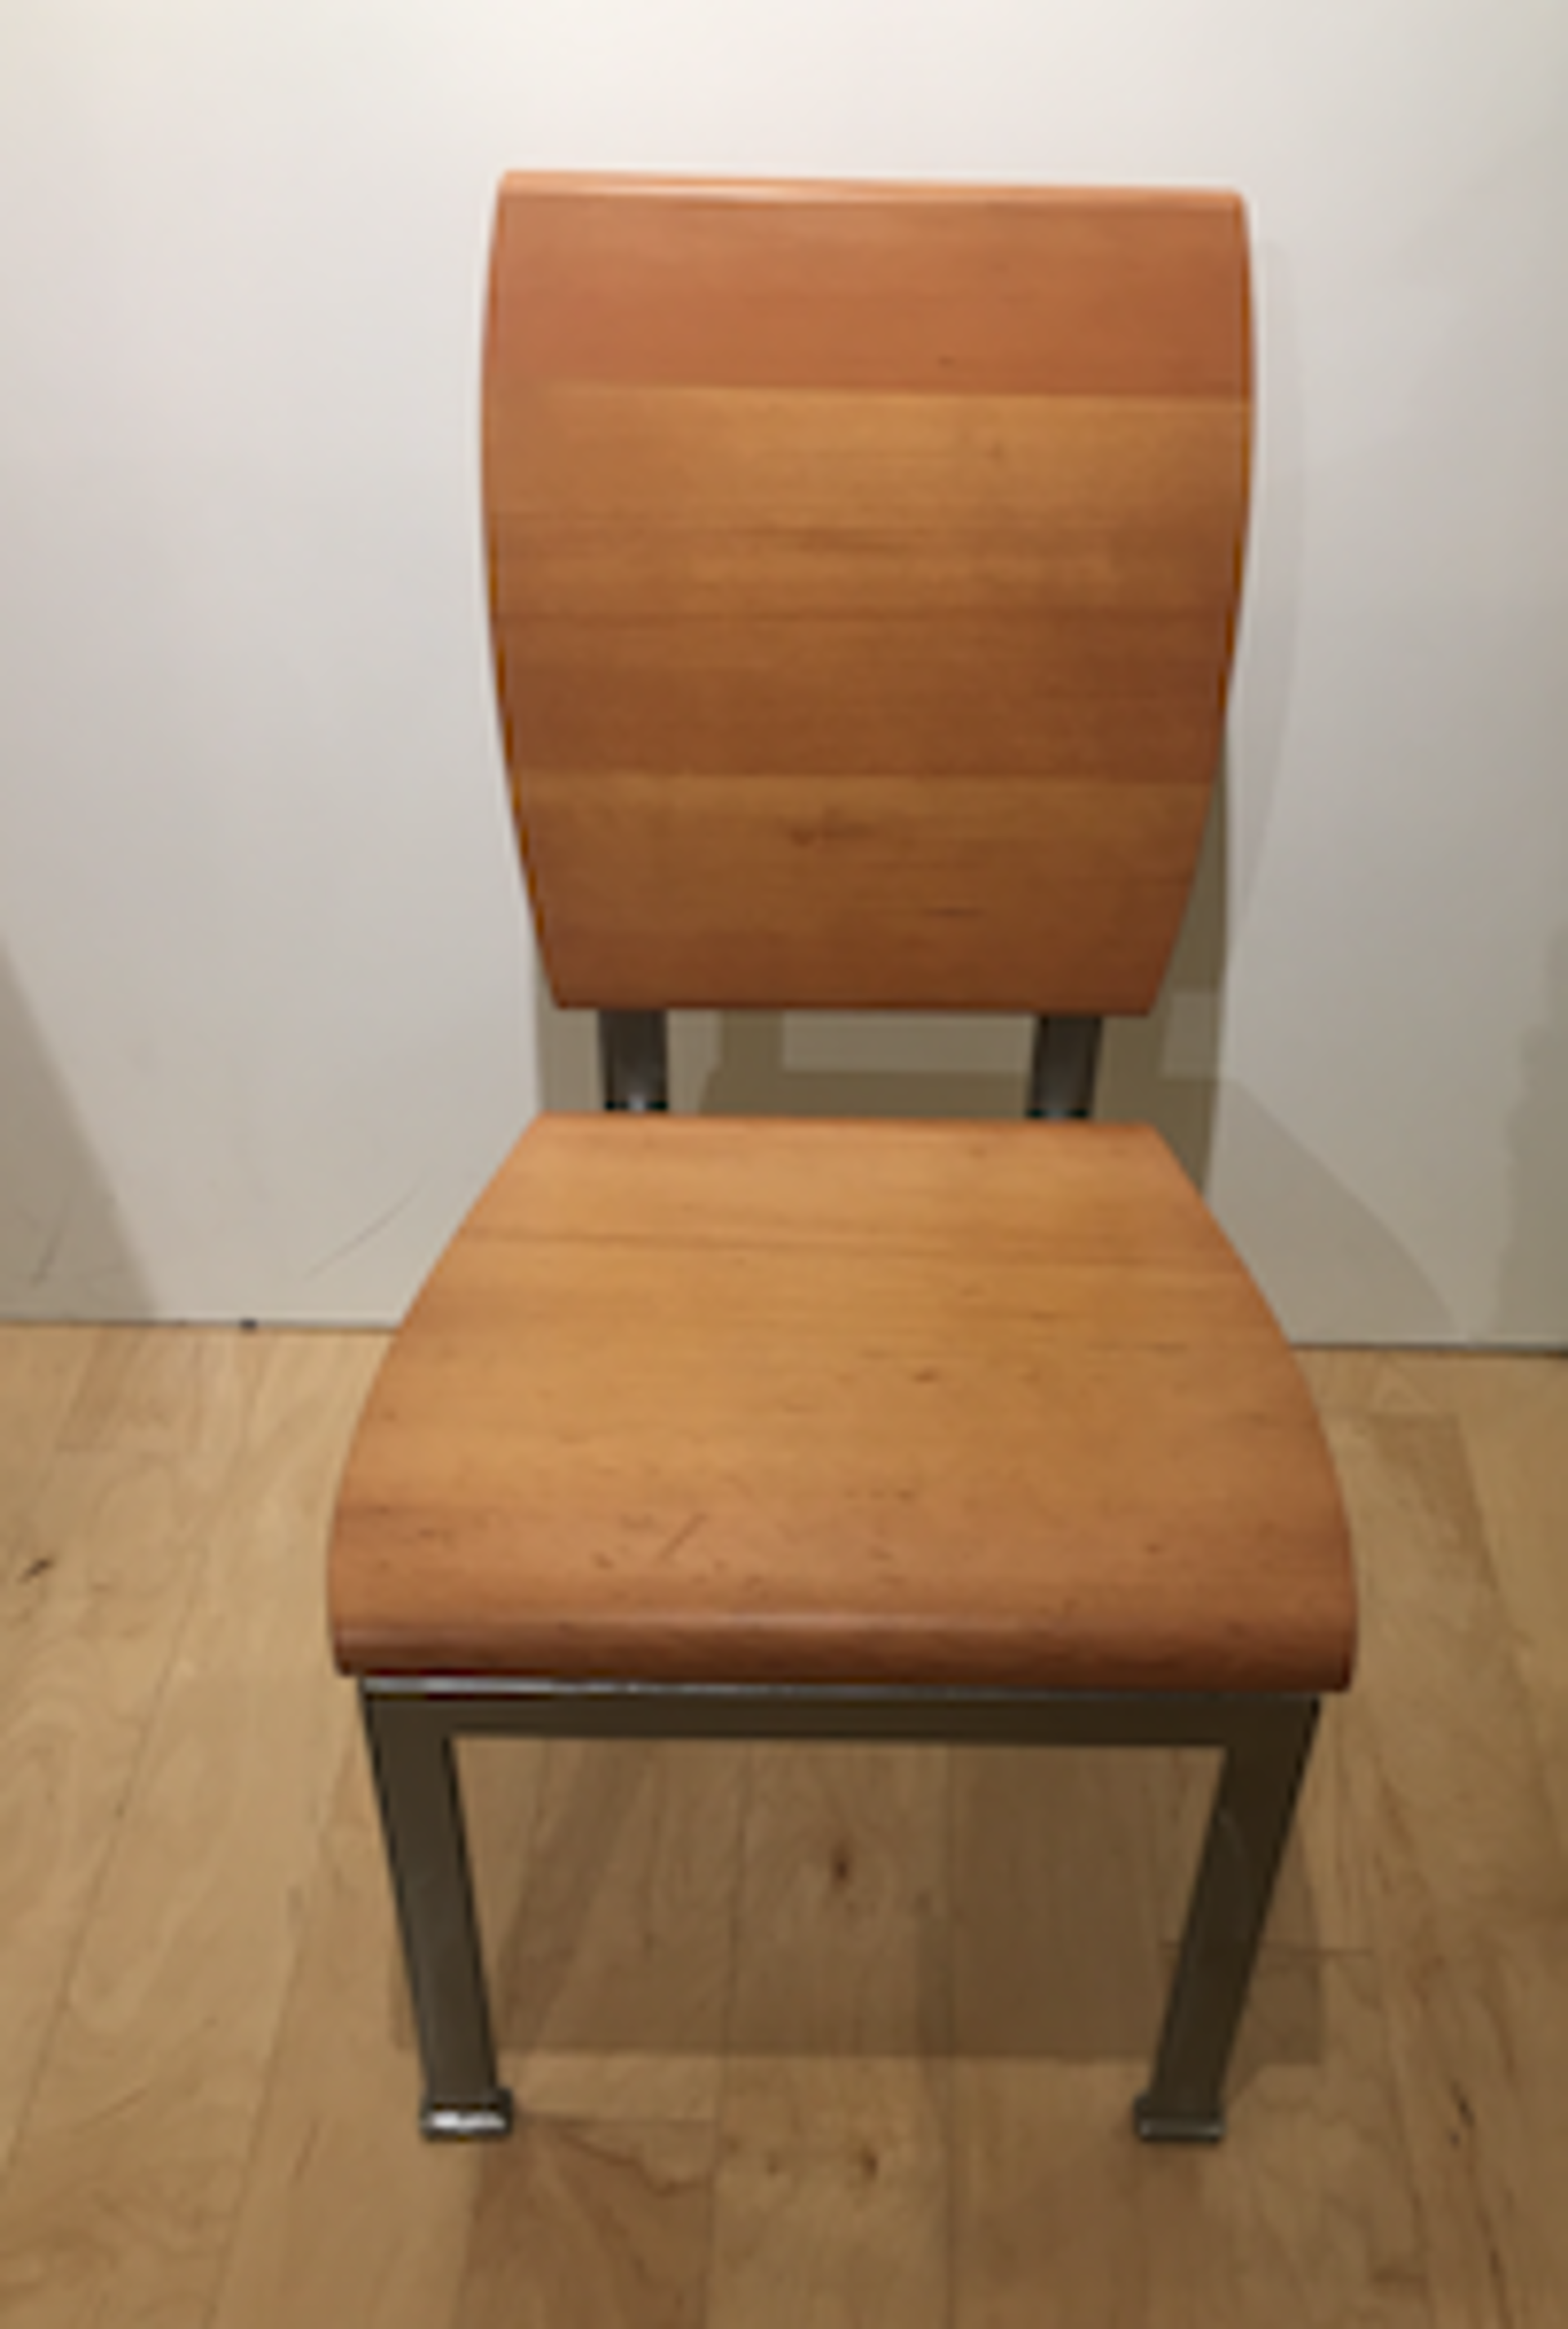 KIRK Chair 2/2 by Arnt Arntzen